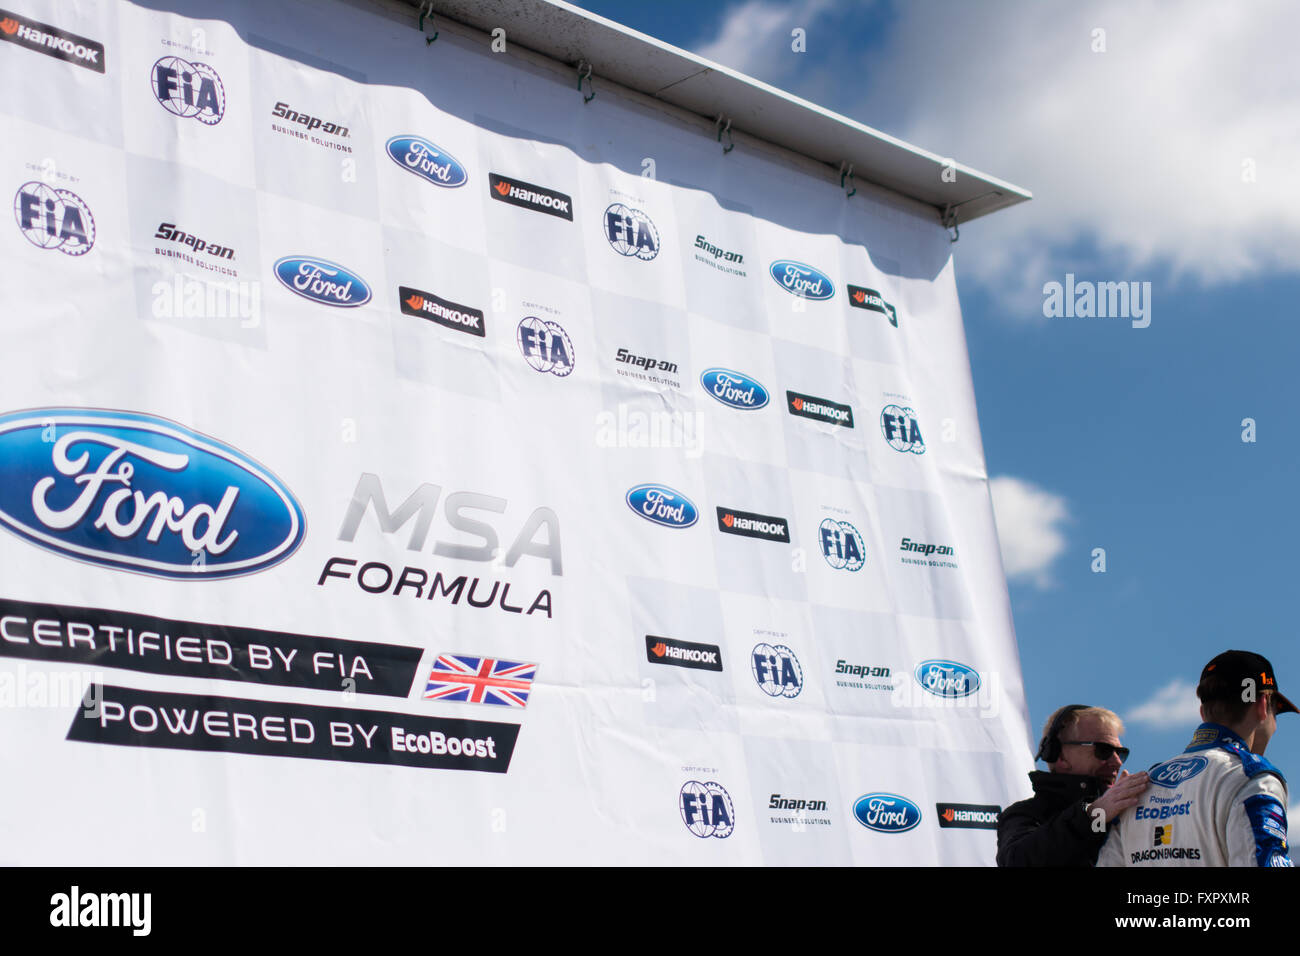 Castle Donington, Derby, Royaume-Uni. 17 avril, 2016. Sennan Fielding et donne l'évolution de JHR interview après la course de Formule Ford MSA à Donington Park Circuit (Photo par Gergo Toth / Alamy Live News) Banque D'Images